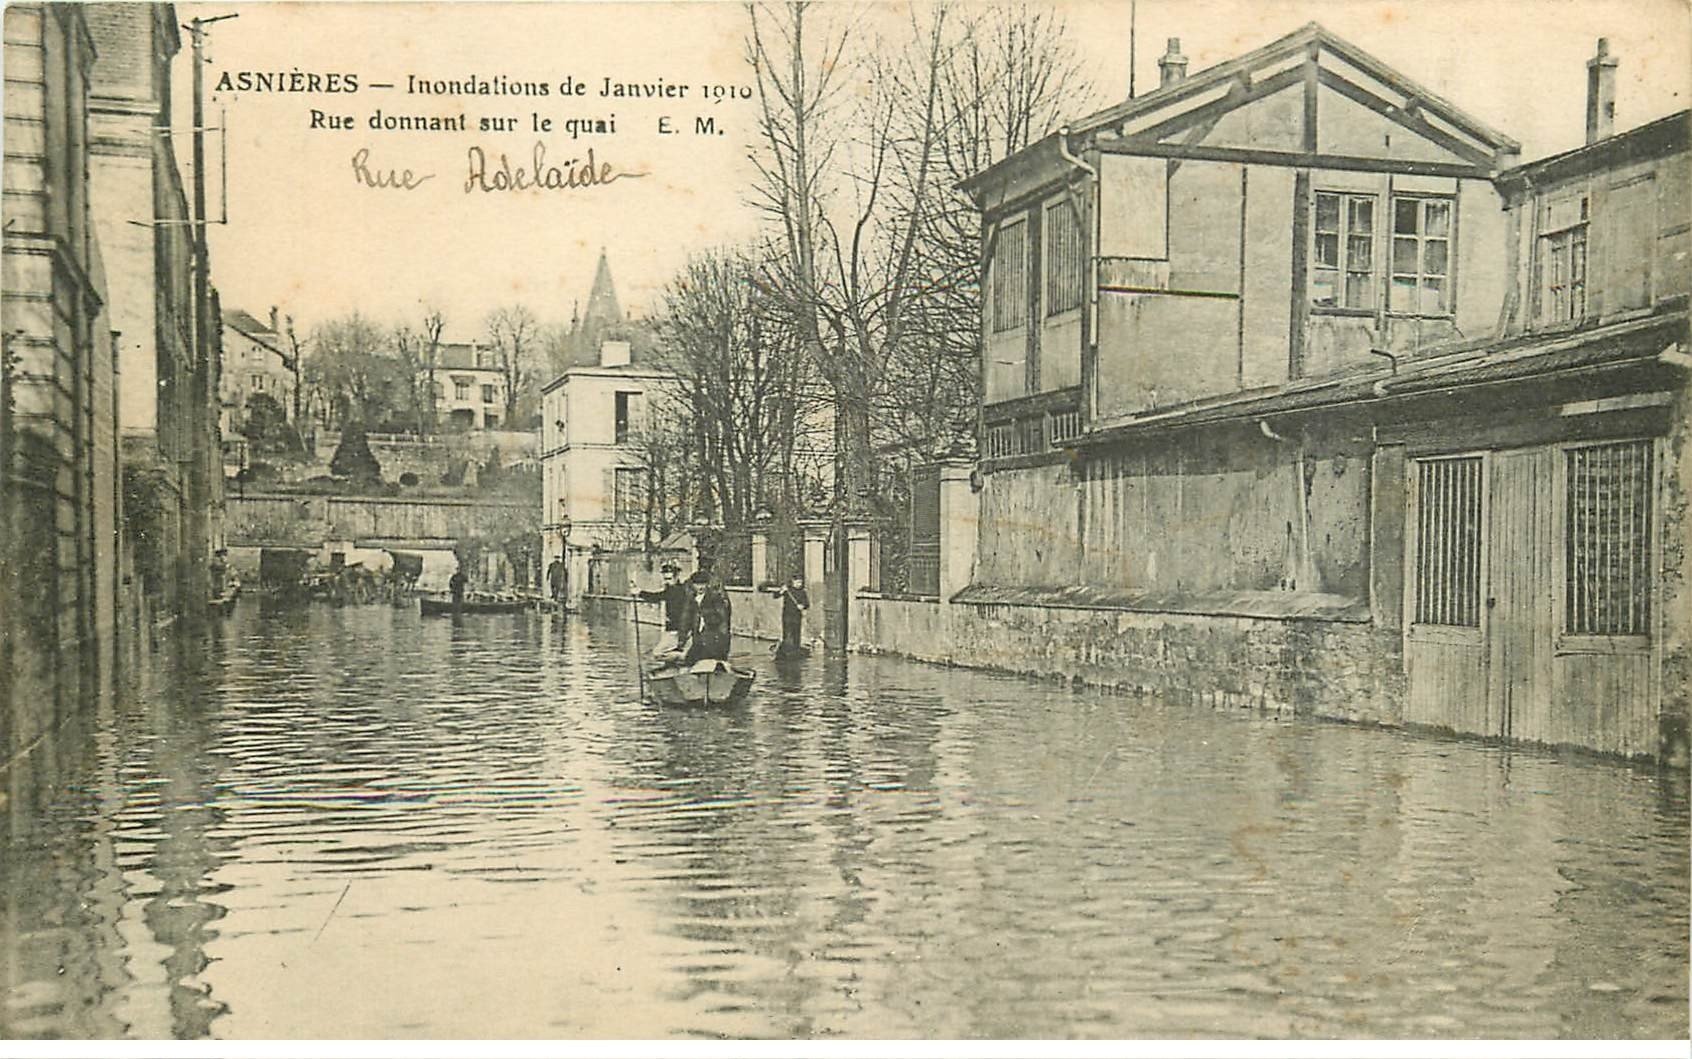 Inondations et Crue de 1910. ASNIERES 92. Rue Adélaïde donnant sur Quai